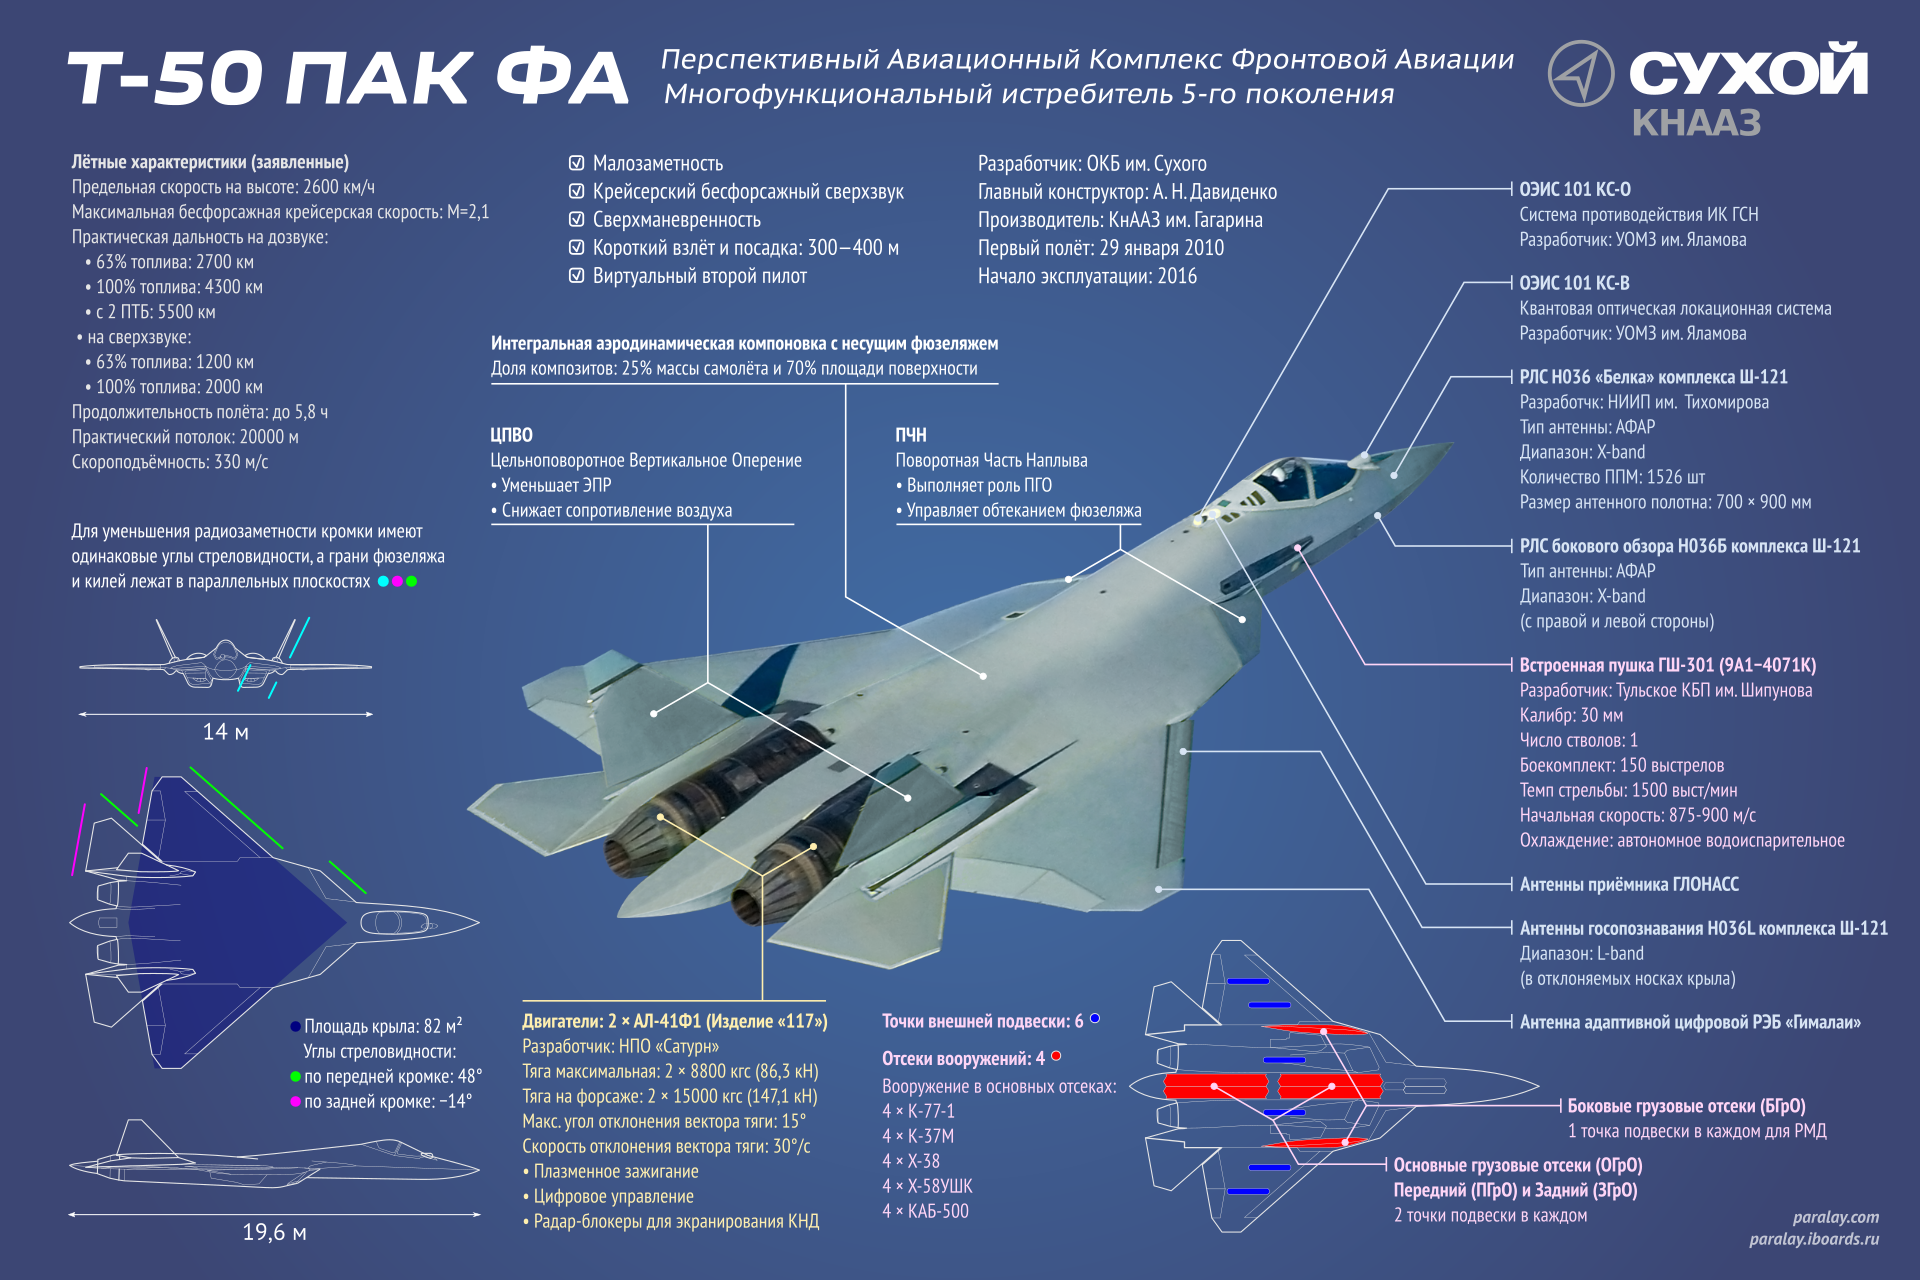 Истребитель су-57 — провал отечественного авиастроения или передовой самолет? - hi-news.ru